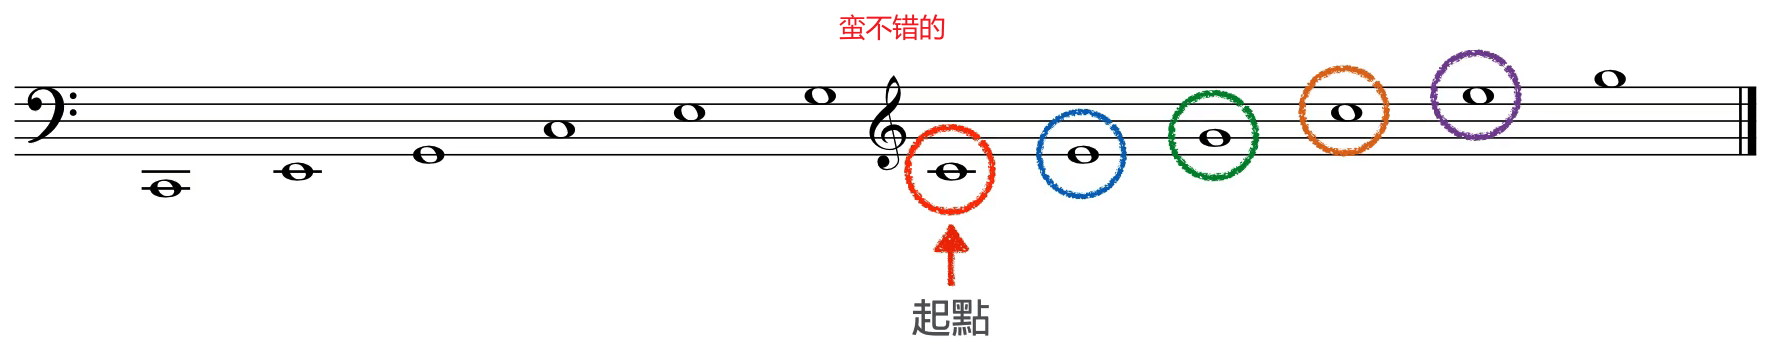 从中央 C 开始连续用和弦音琶音